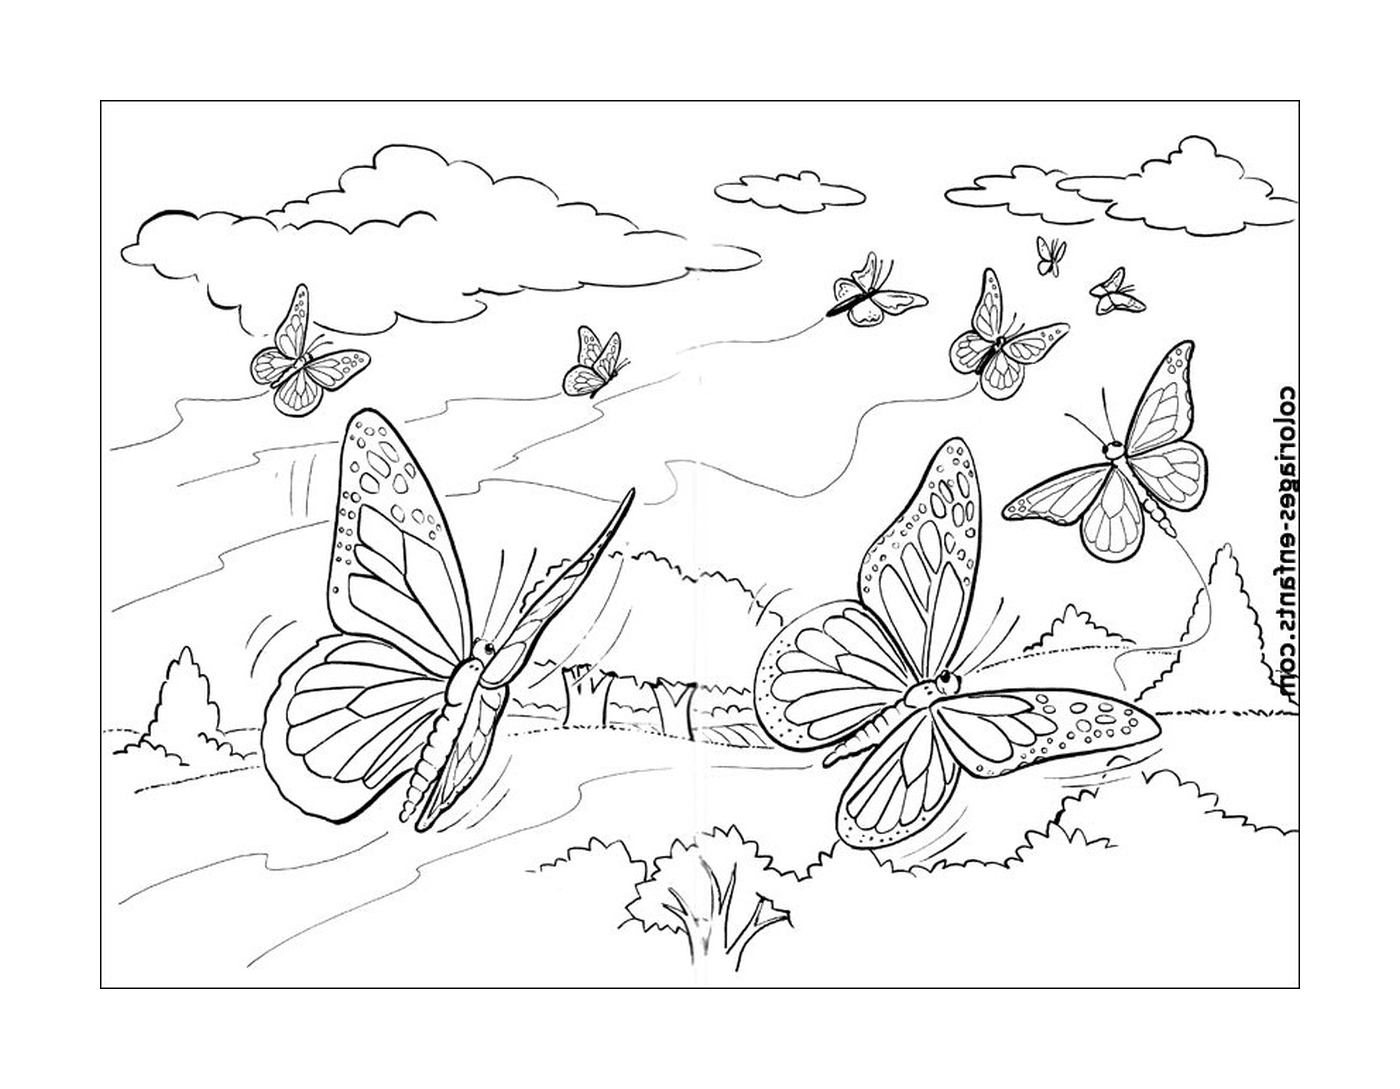  飞行中的蝴蝶 